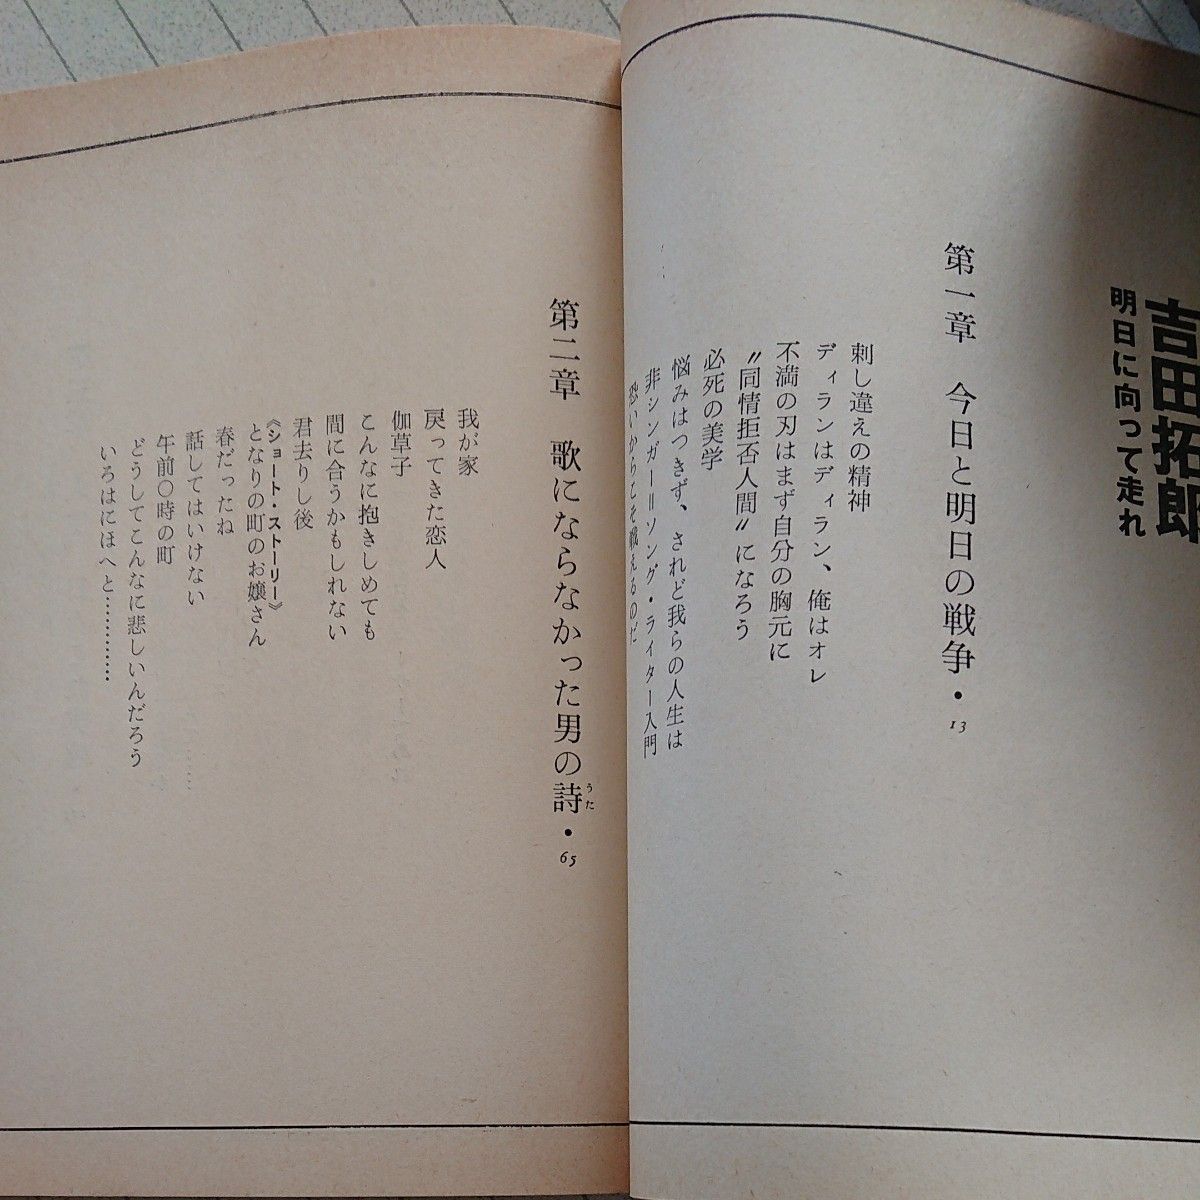 吉田拓郎 「明日に向かって走れ」 昭和51年発行 吉田拓郎氏のエッセイです。 (八曜社発行)